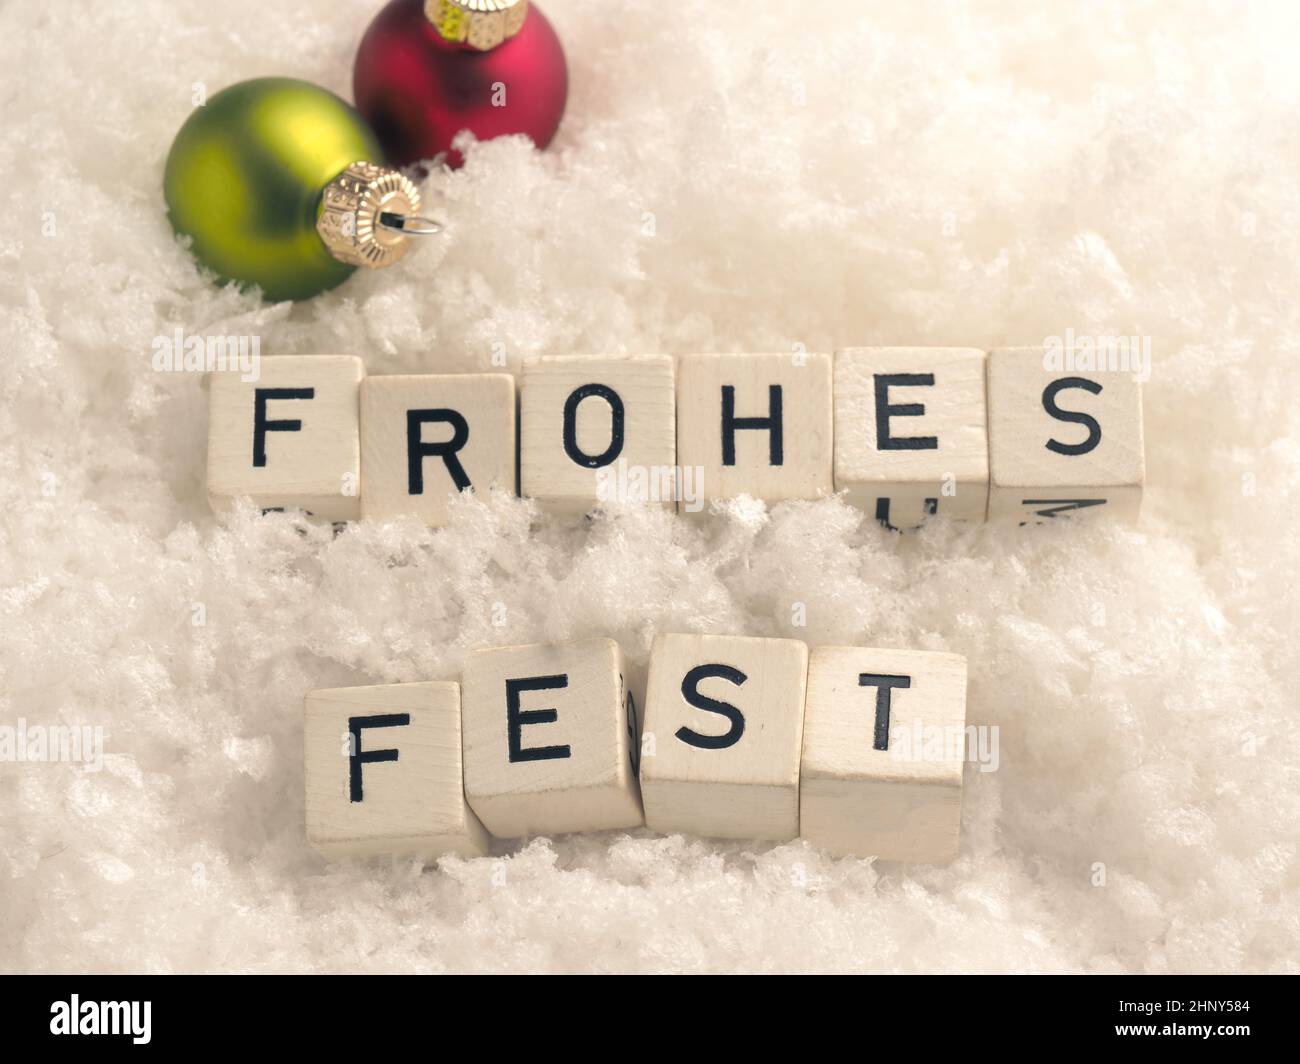 Frohes Fest, Natale allegro tedesco, blocchi di legno con colorati baubles di Natale nella neve Foto Stock